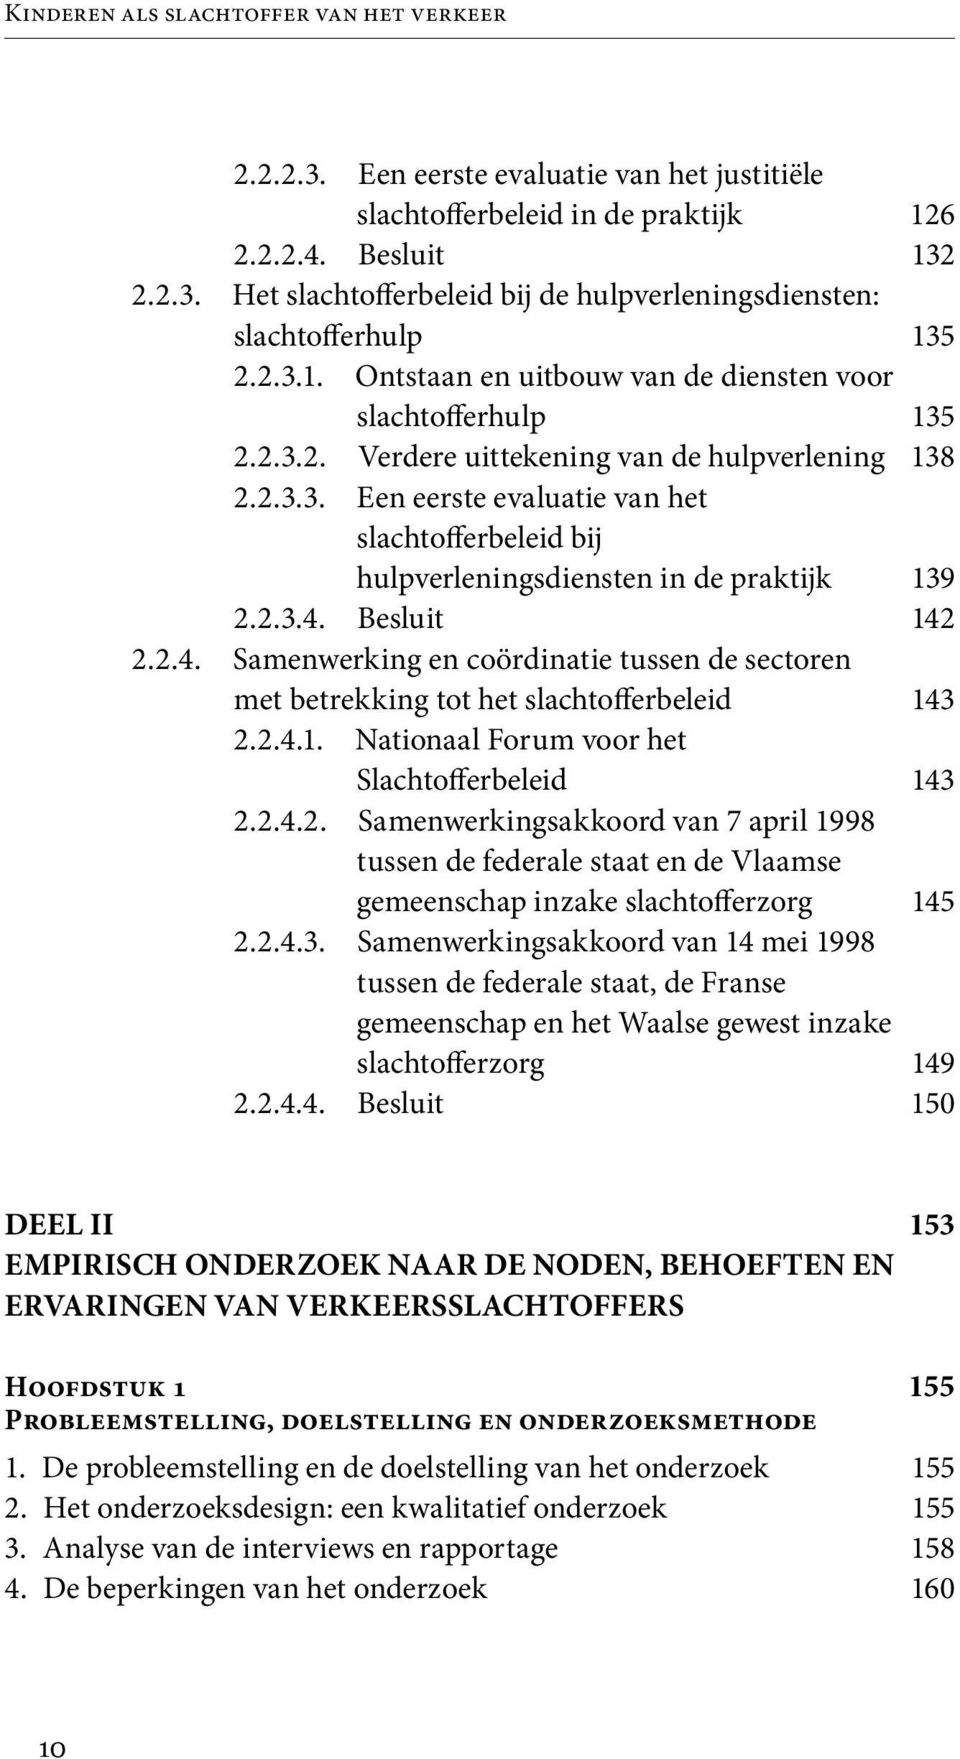 2.3.4. Besluit 2.2.4. Samenwerking en coördinatie tussen de sectoren met betrekking tot het slachtofferbeleid 2.2.4.1. Nationaal Forum voor het Slachtofferbeleid 2.2.4.2. Samenwerkingsakkoord van 7 april 1998 tussen de federale staat en de Vlaamse gemeenschap inzake slachtofferzorg 2.